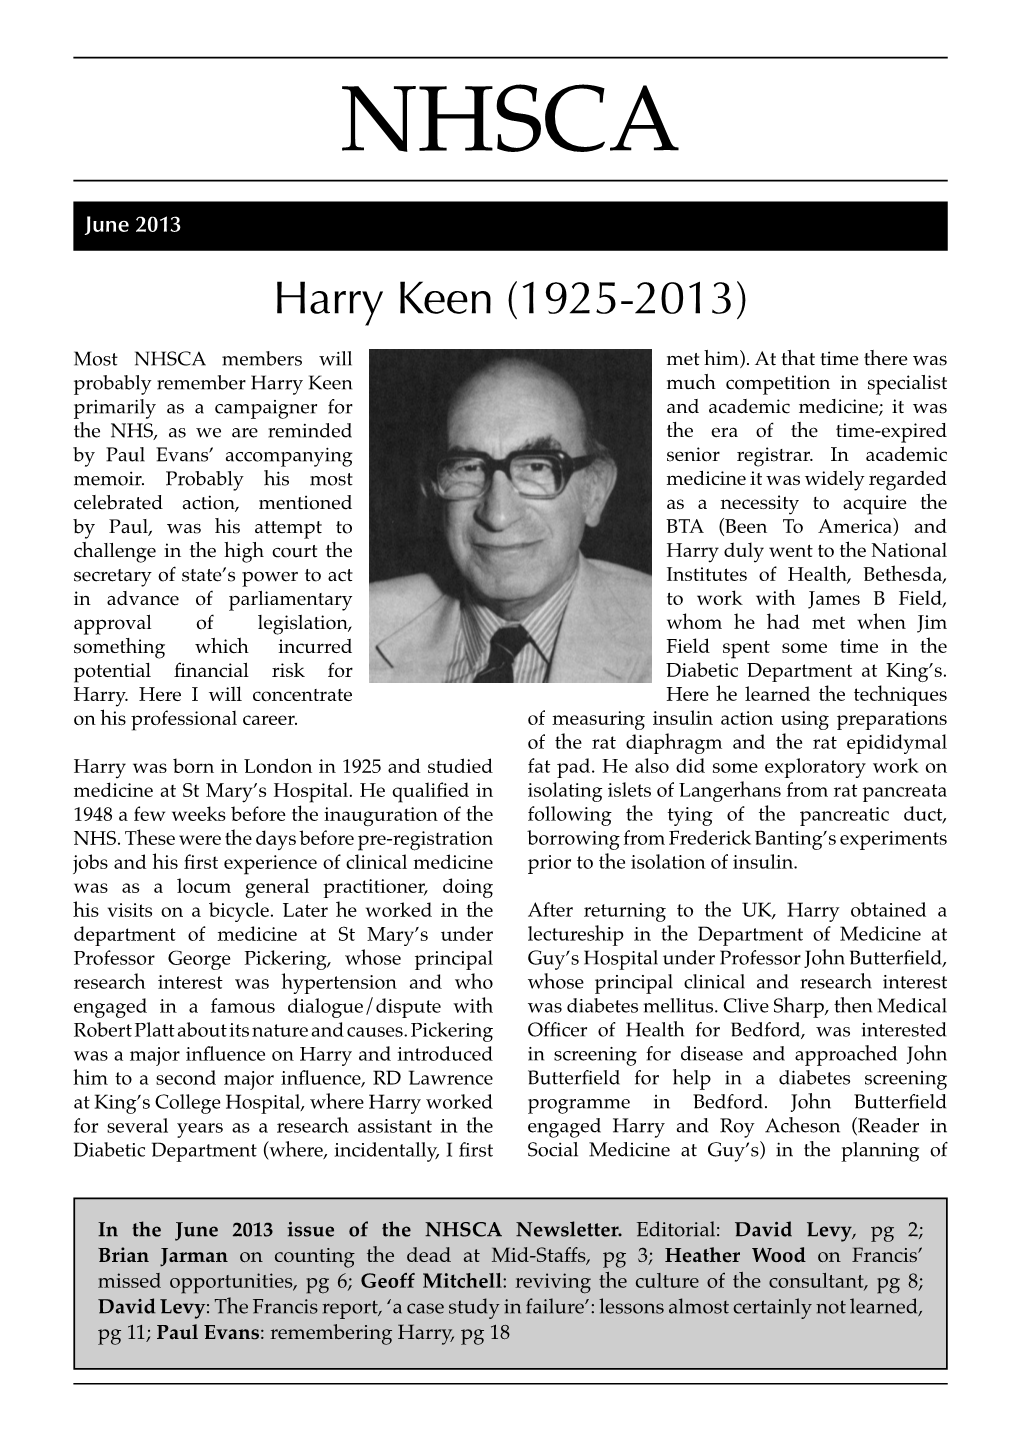 Harry Keen (1925-2013)